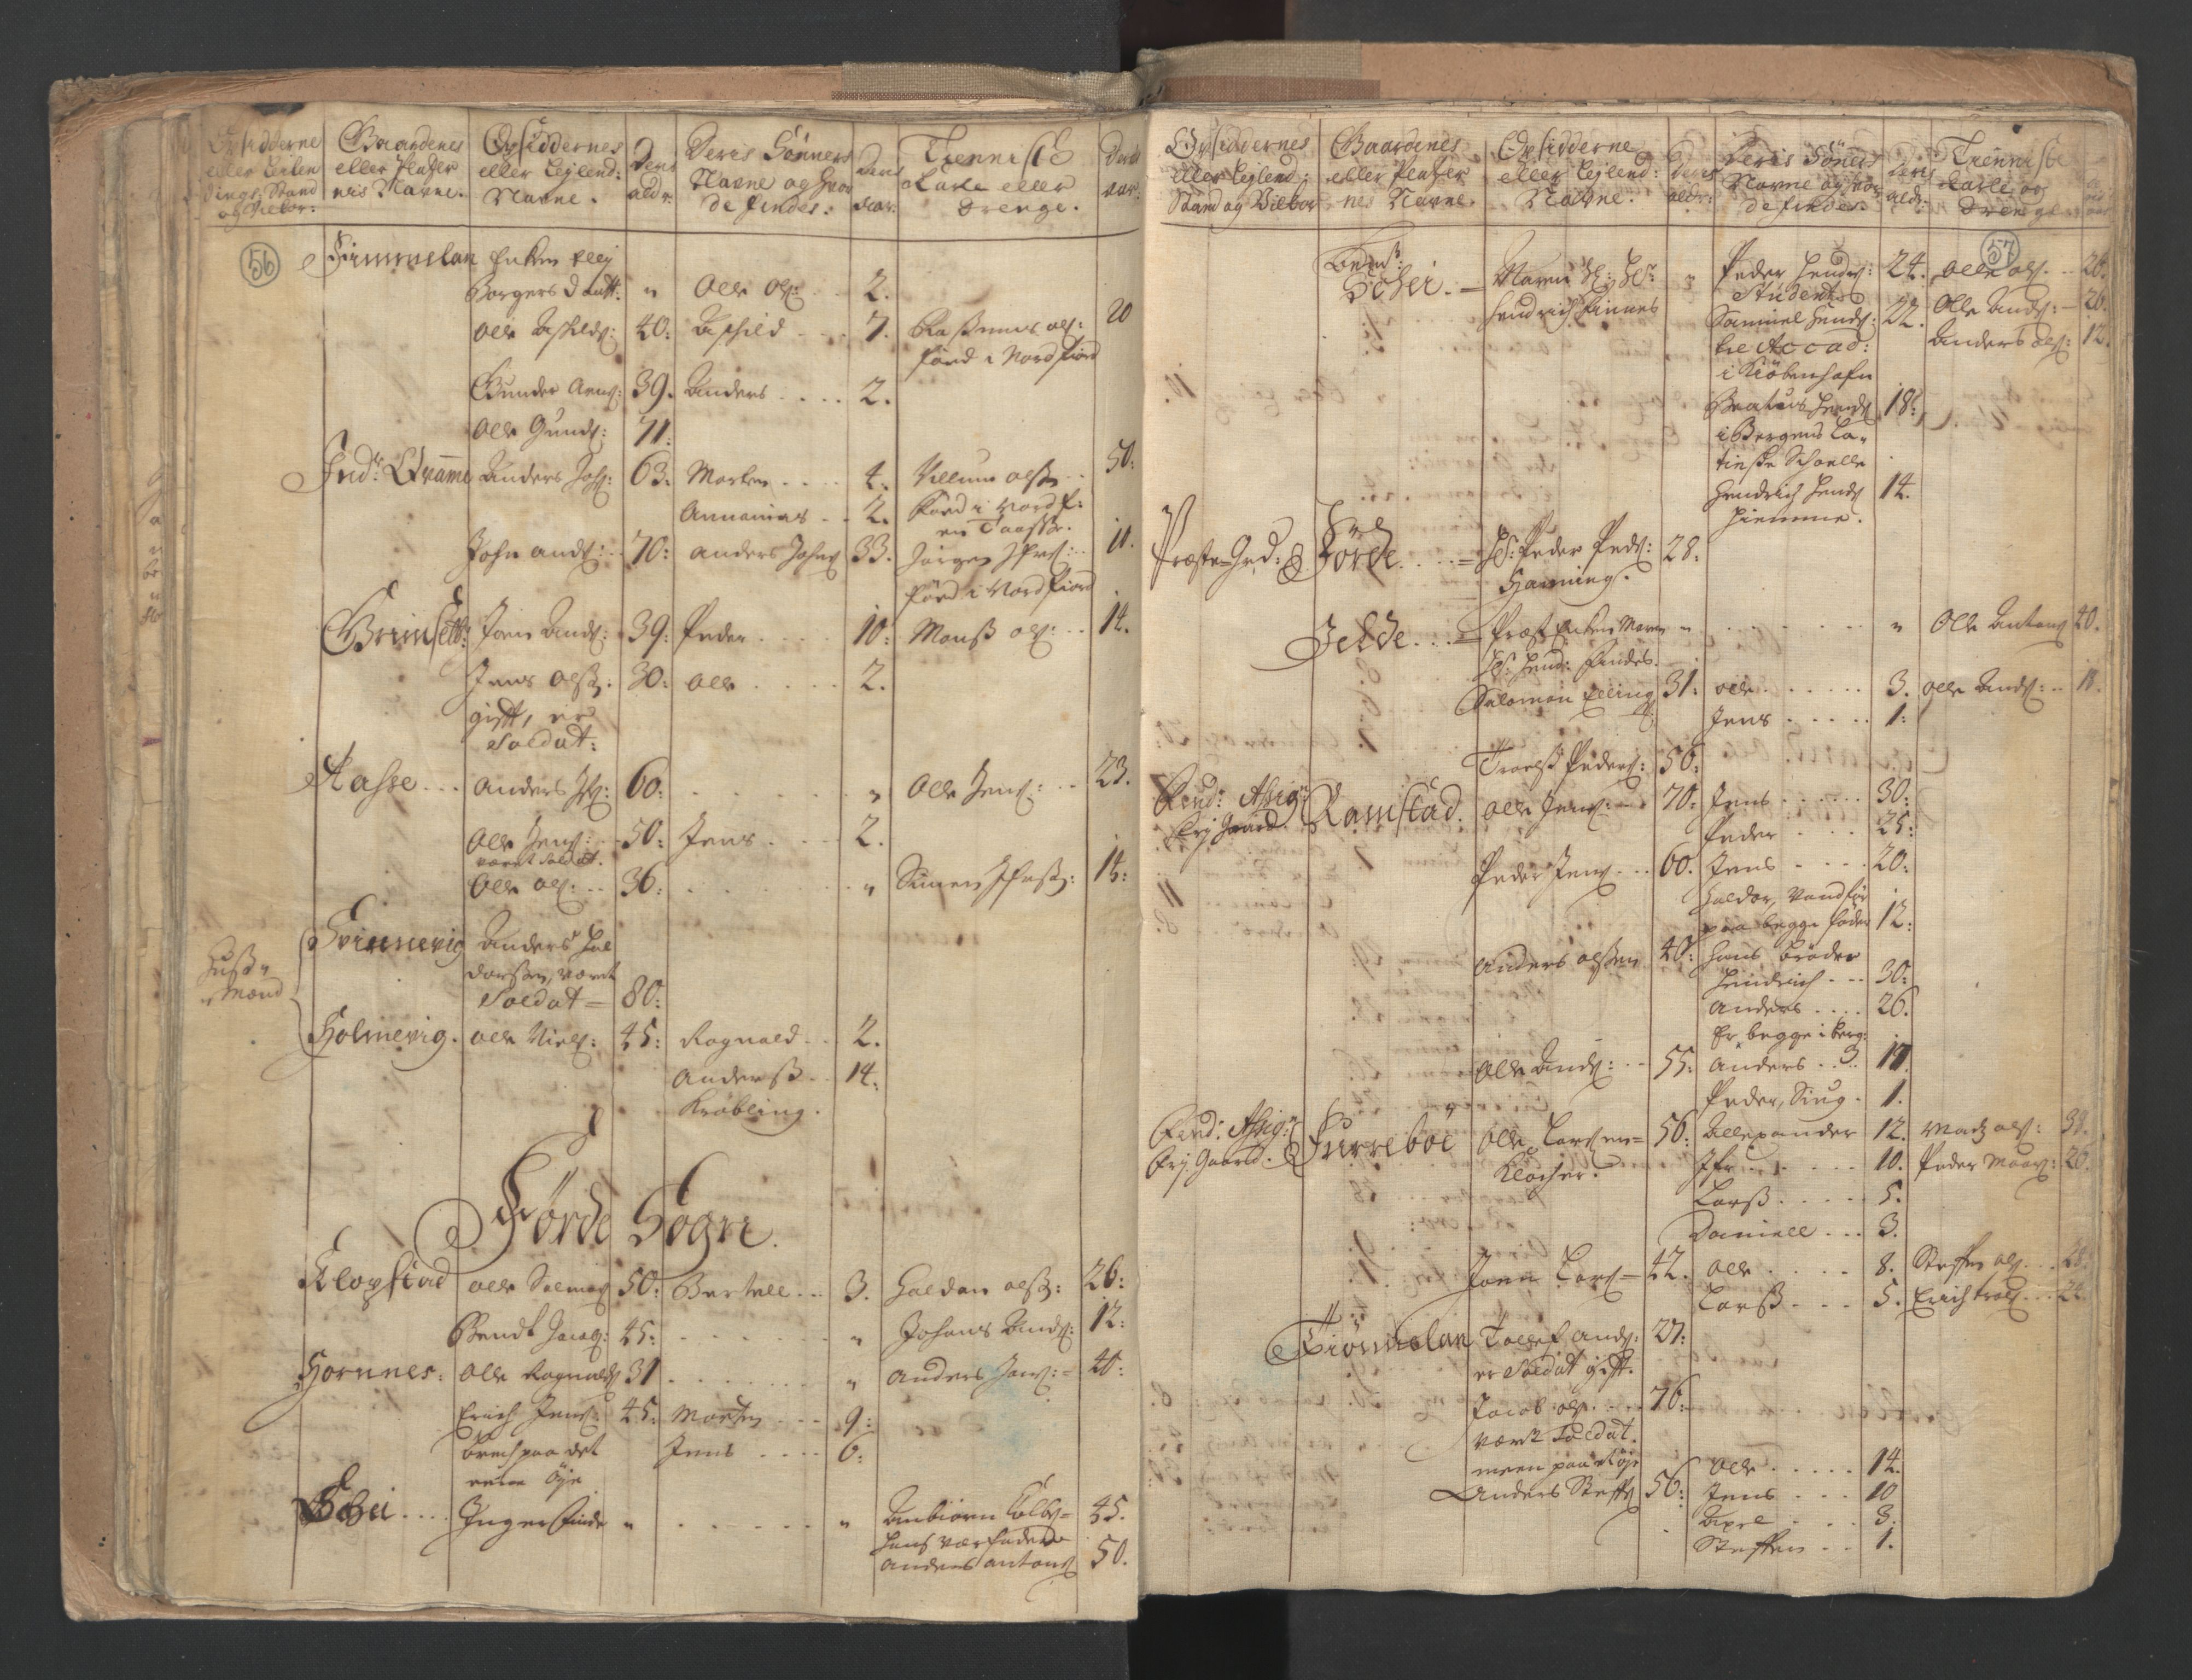 RA, Census (manntall) 1701, no. 9: Sunnfjord fogderi, Nordfjord fogderi and Svanø birk, 1701, p. 56-57